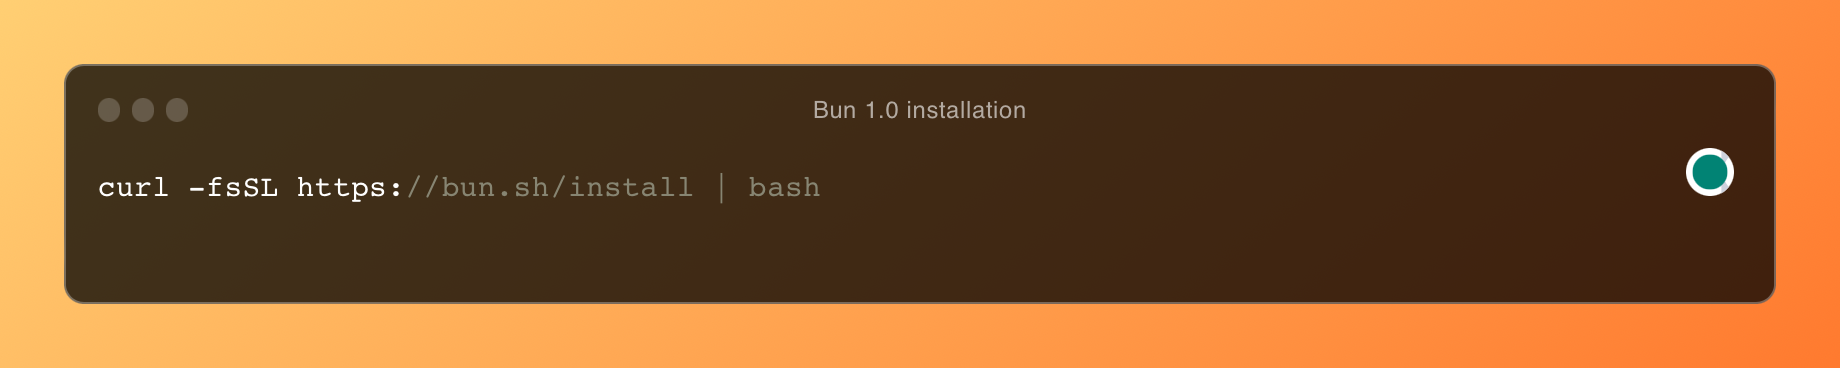 Встановлення Bun 1.0